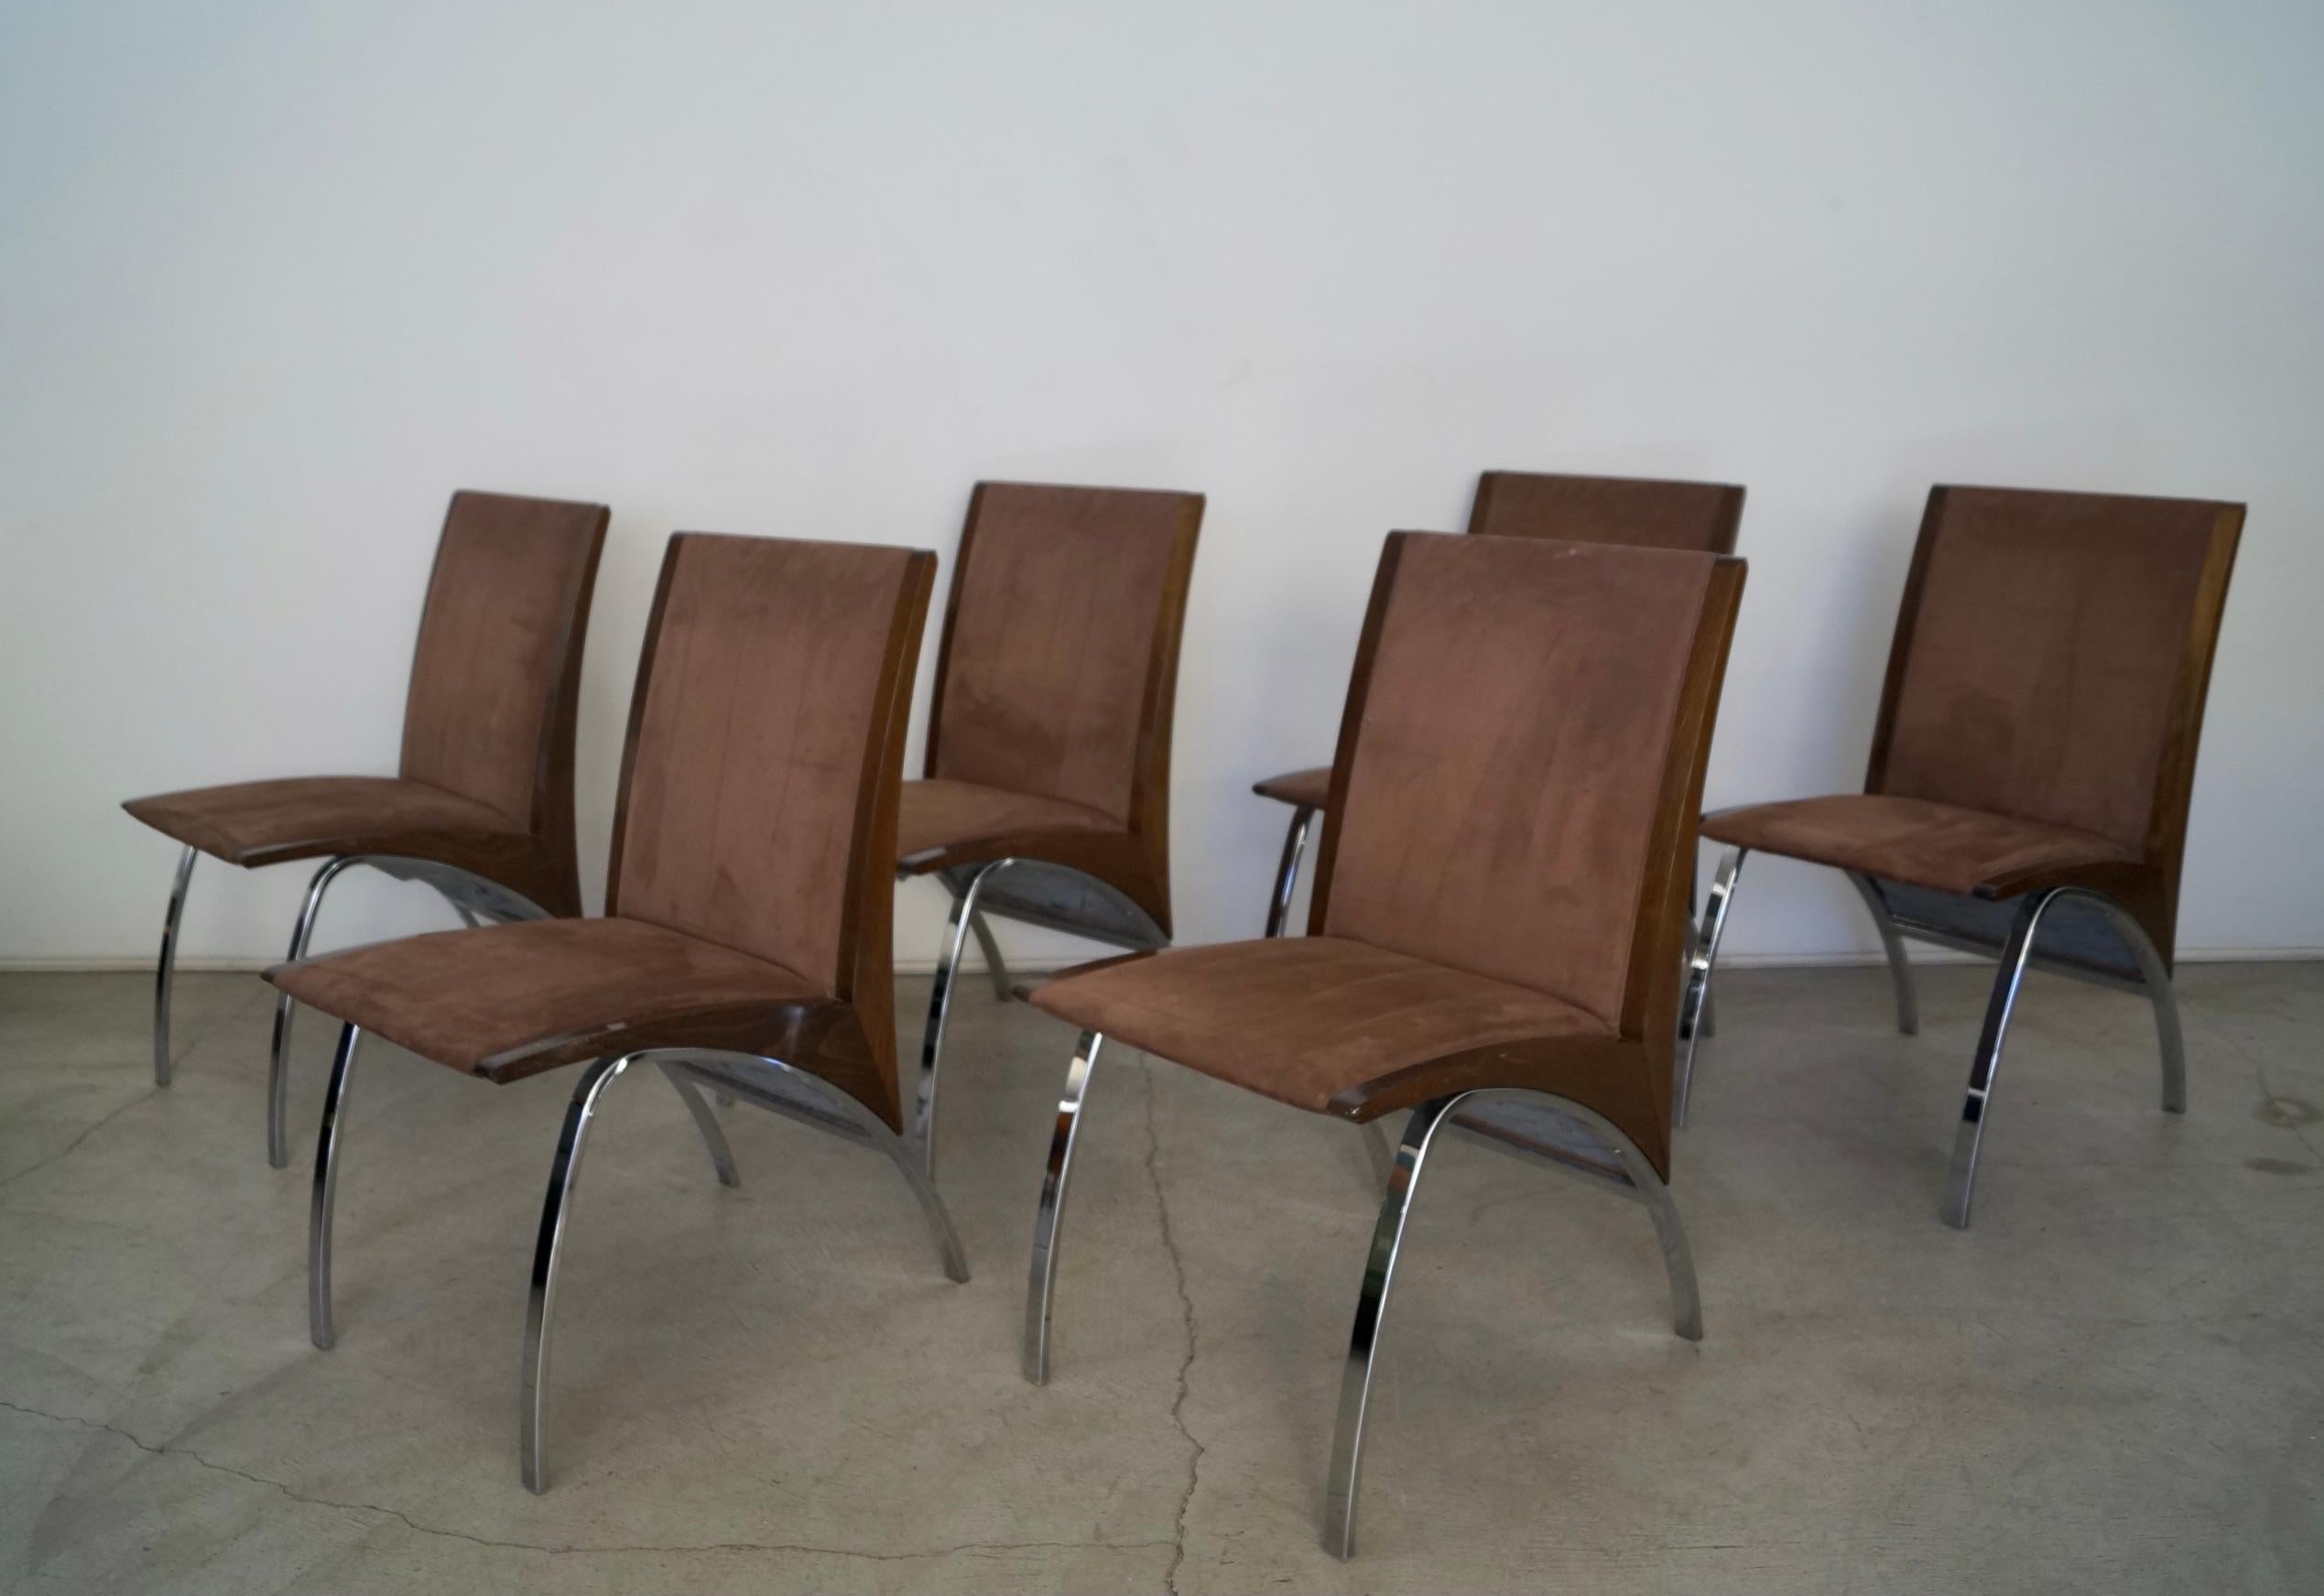 Unglaubliche postmoderne Esszimmerstühle zu verkaufen. Aus den späten 1990er / frühen 2000er Jahren, und wirklich einzigartig. Sie wurden von Pietro Costantini entworfen und von Ello Furniture hergestellt, das heute nicht mehr existiert. Sie haben